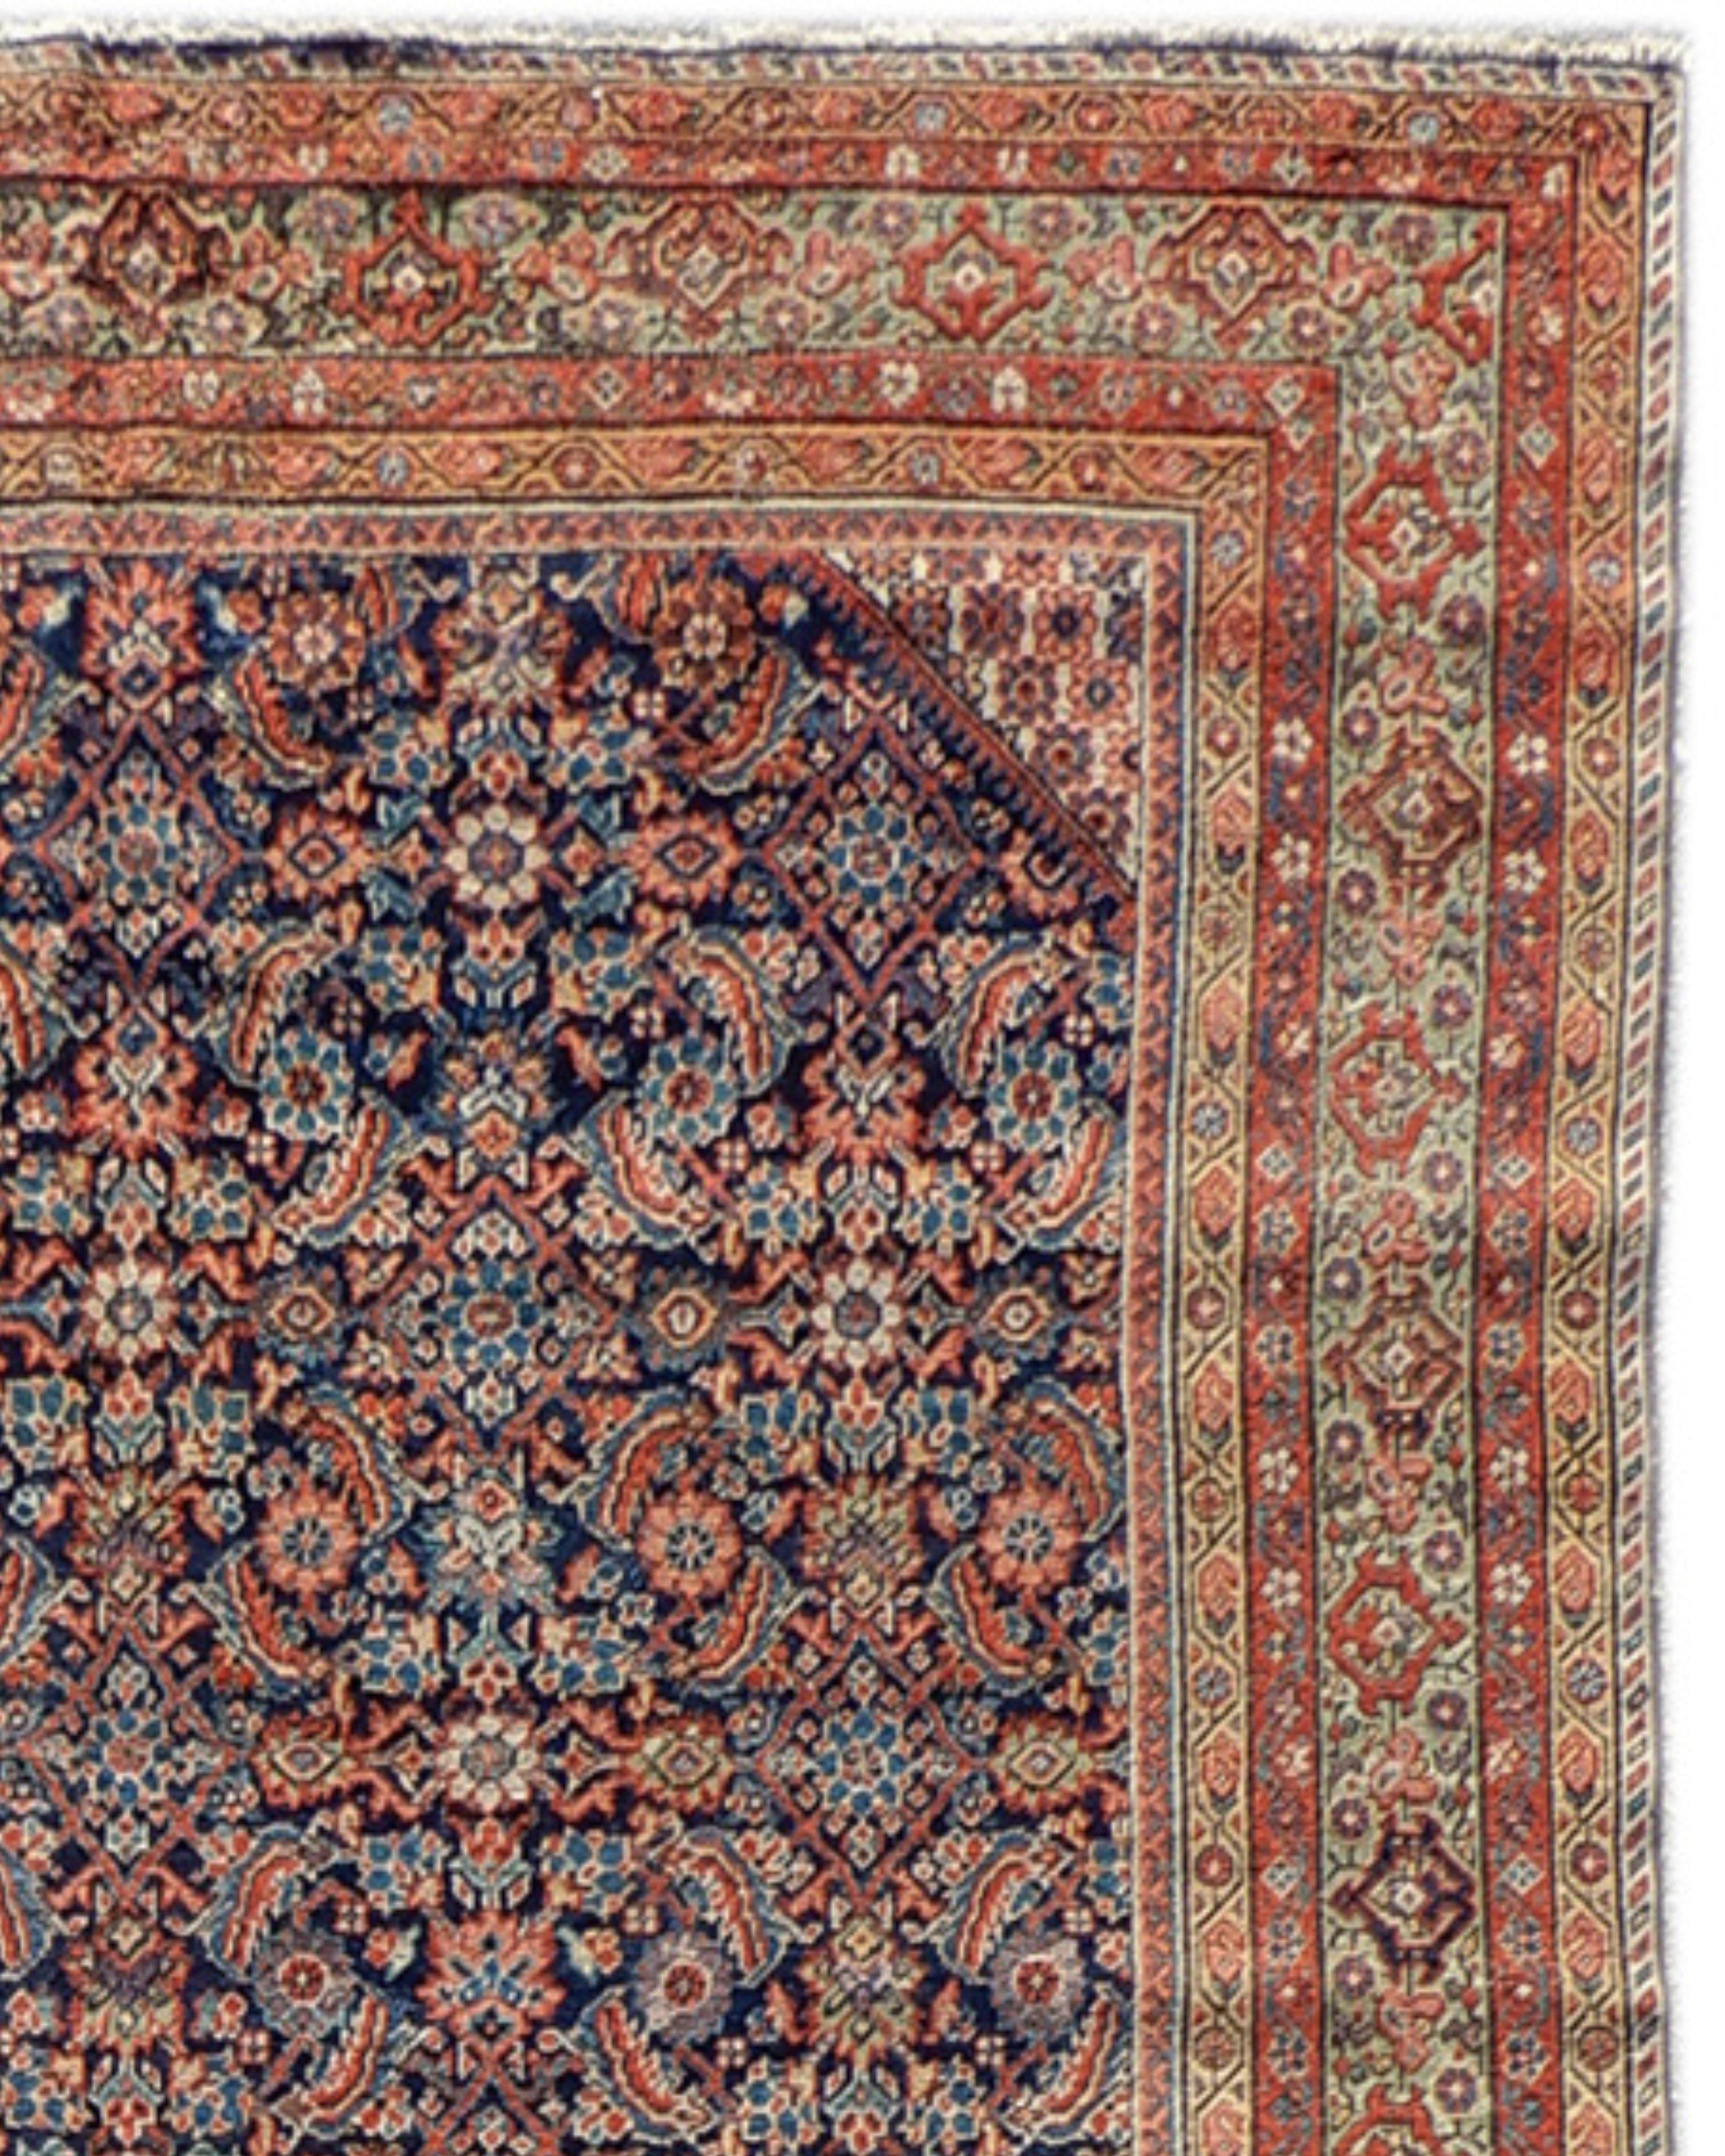 Galerieteppich von Fereghan, spätes 19. Jahrhundert

Dieser Fereghan-Teppich aus Zentralpersien ist eine zarte Wiedergabe des Rapports 